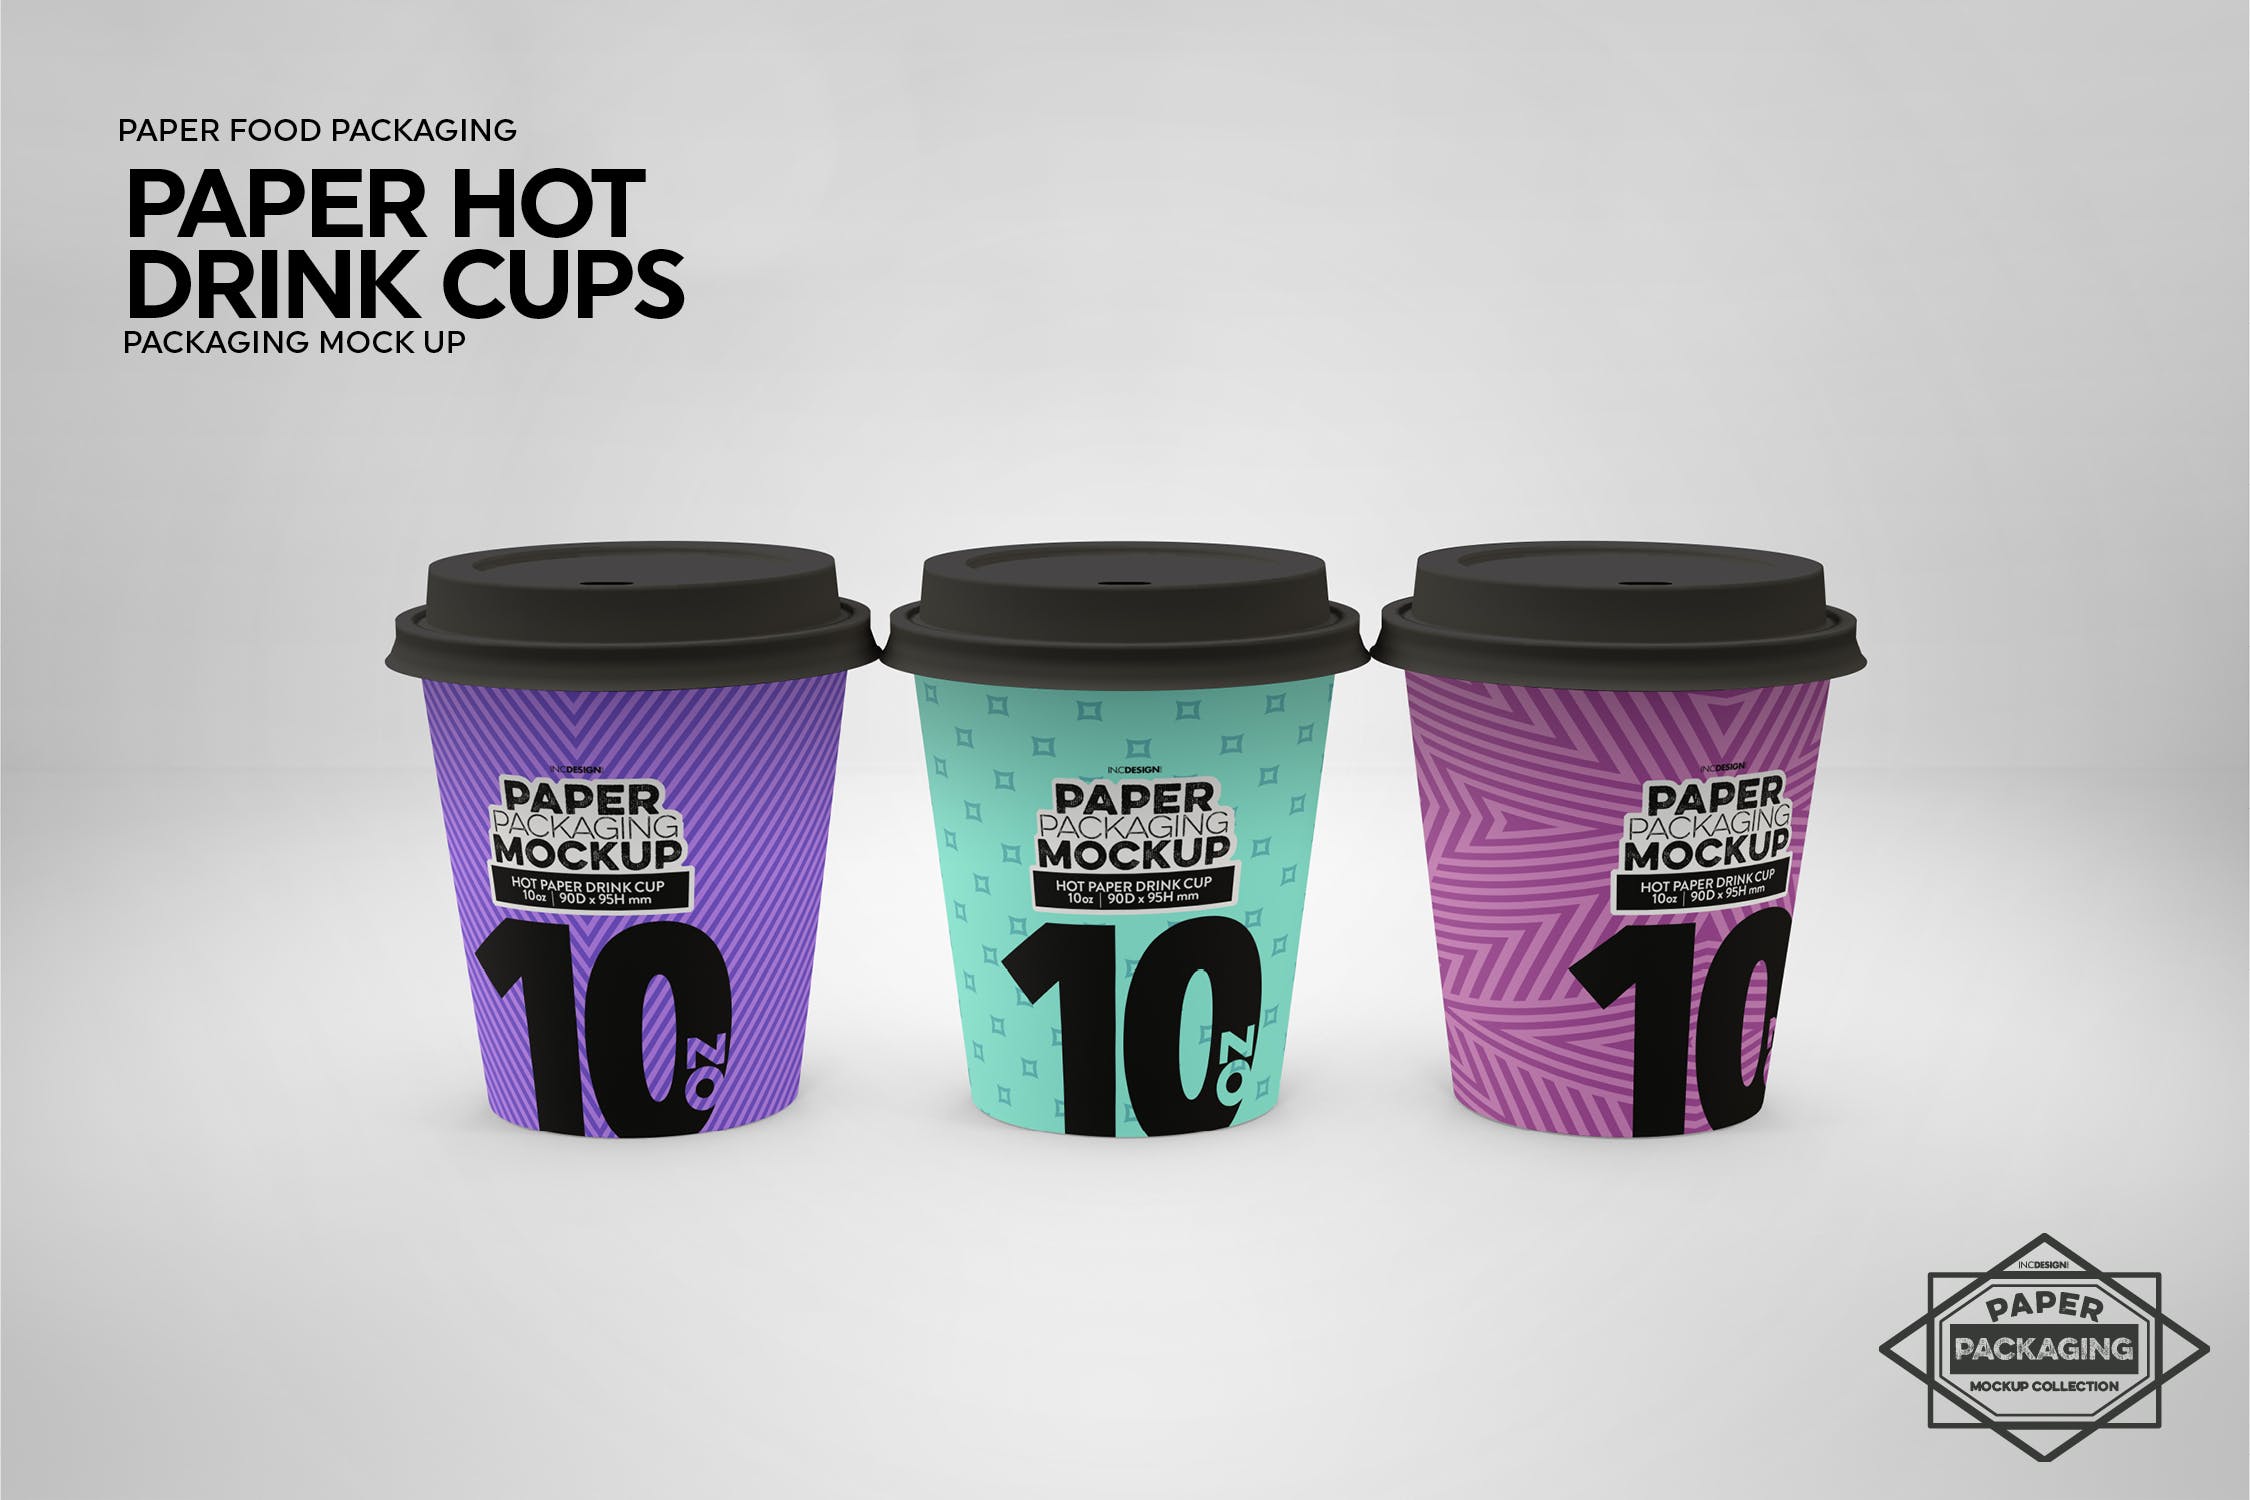 热饮一次性纸杯外观设计第一素材精选 Paper Hot Drink Cups Packaging Mockup插图(12)